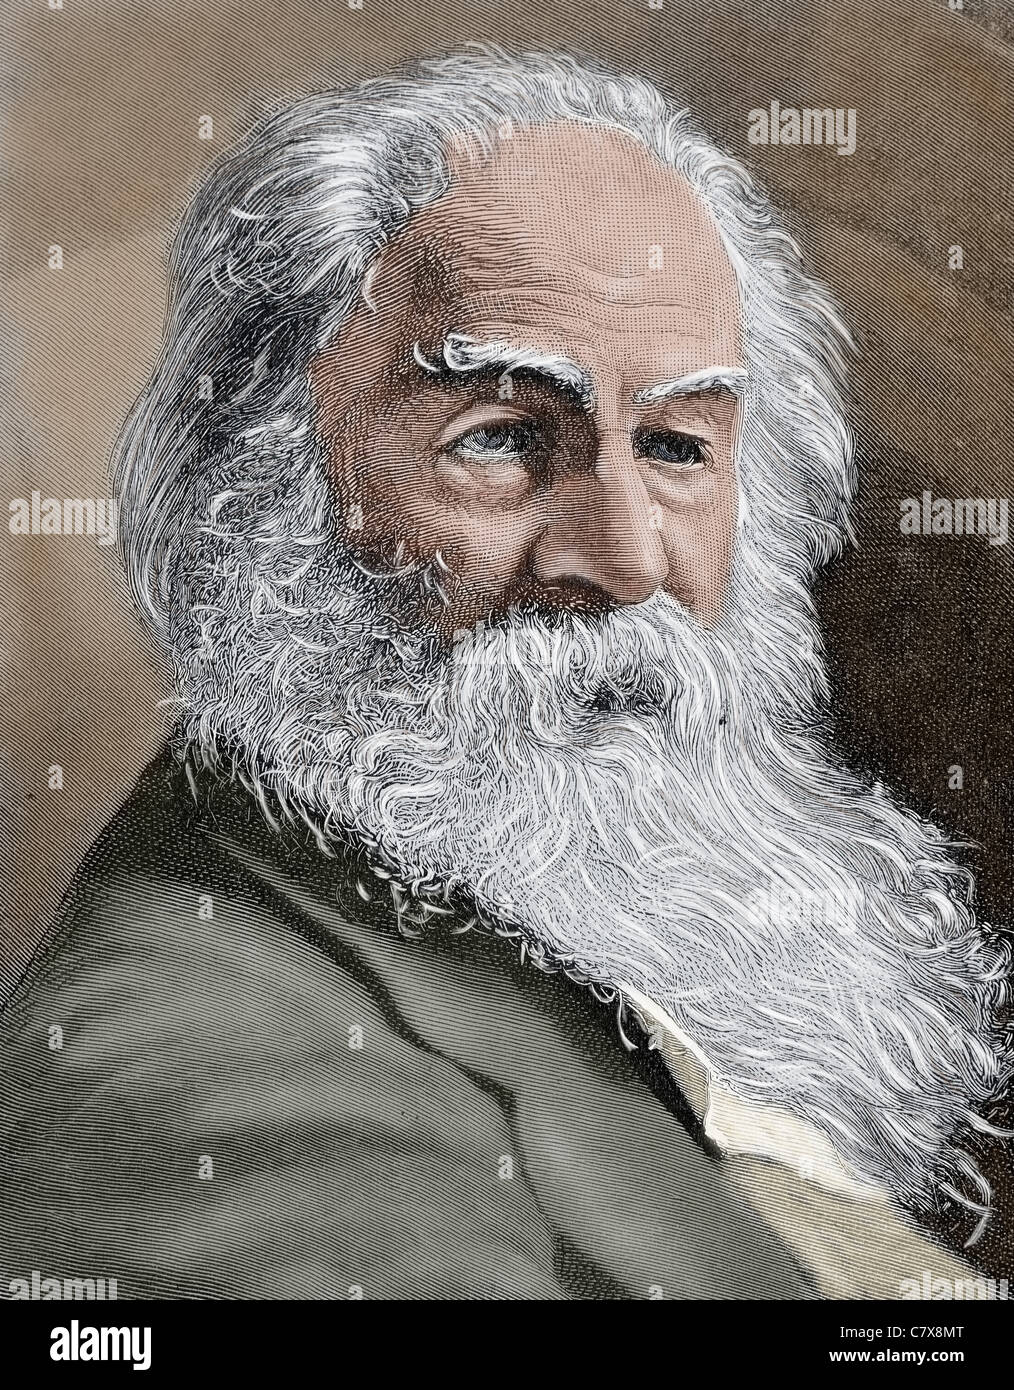 Walt Whitman (1819-1892). Le poète américain., essayiste et journaliste. Gravure en couleur du 19ème siècle. Banque D'Images